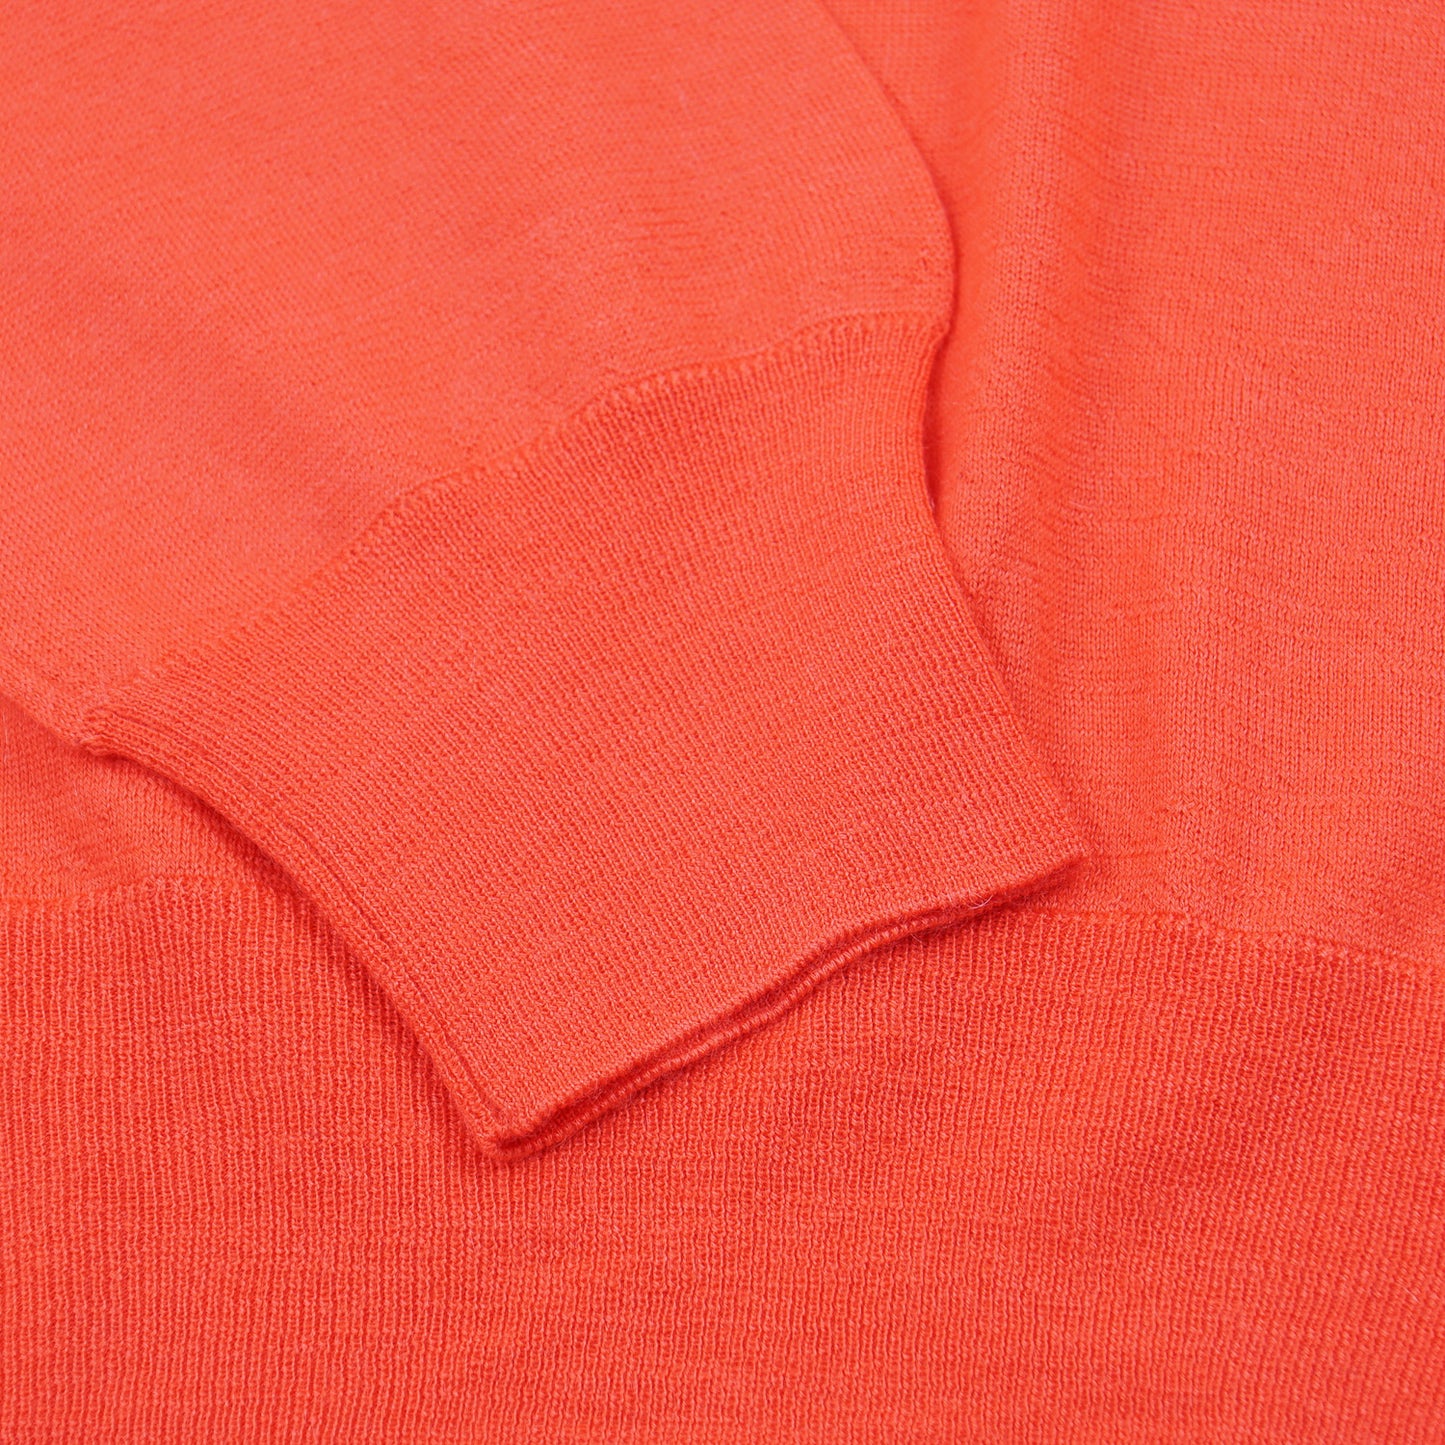 Cruciani Fine-Gauge Cashmere Sweater - Top Shelf Apparel